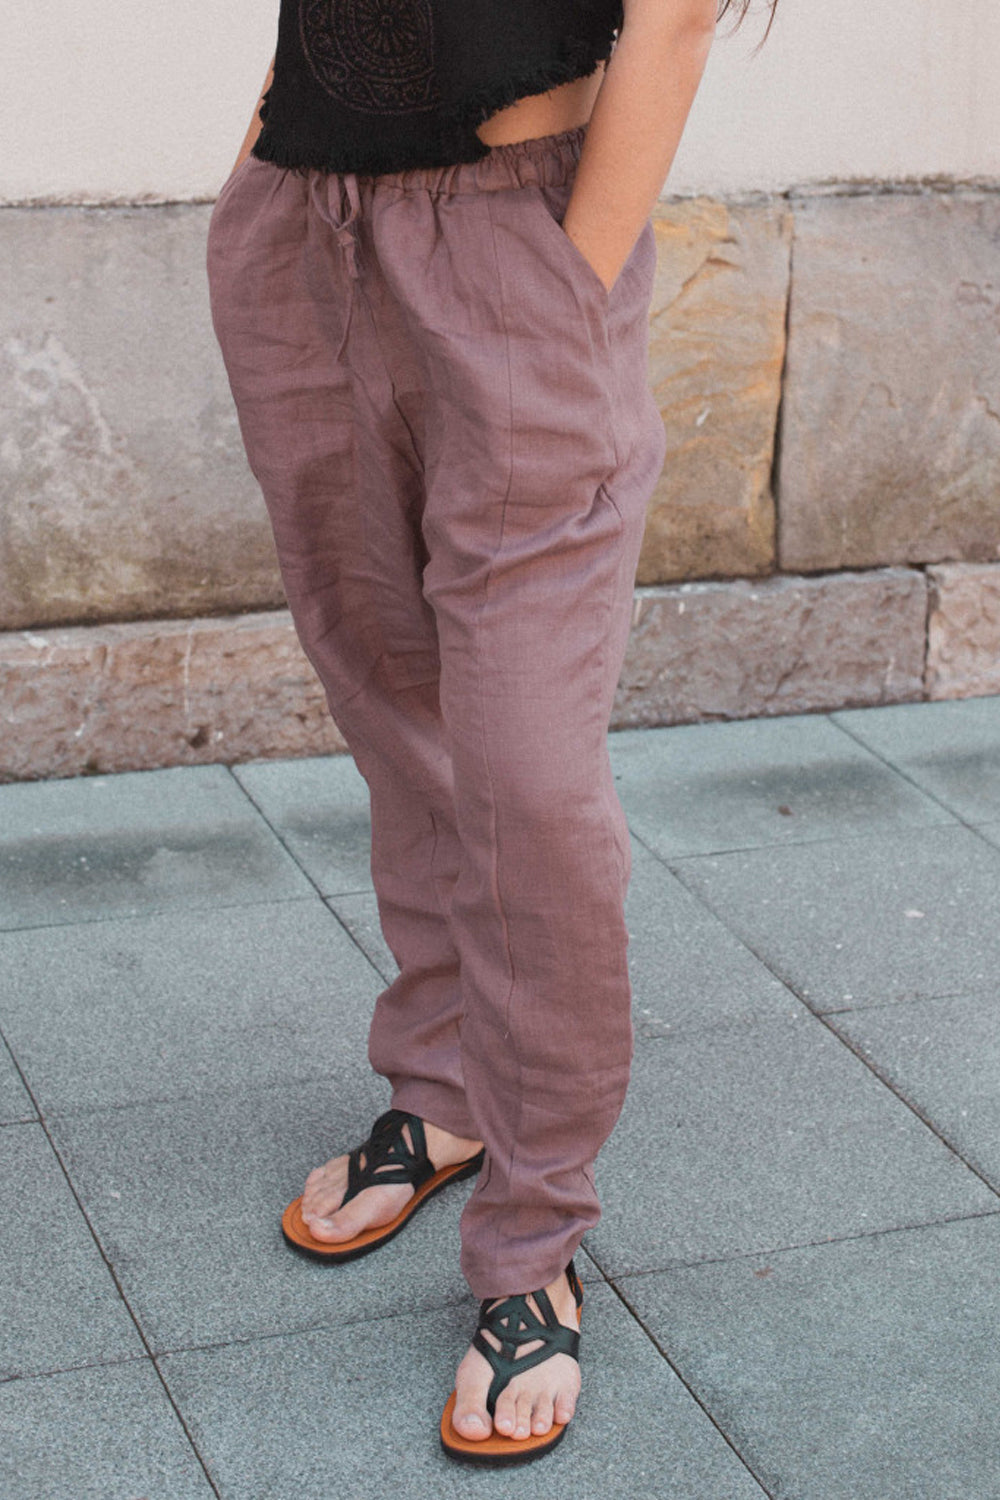 pantalón ligeramente bombacho, con bolsillos laterales y goma elástica en la cintura acompañado de un cordón para ajustarlo